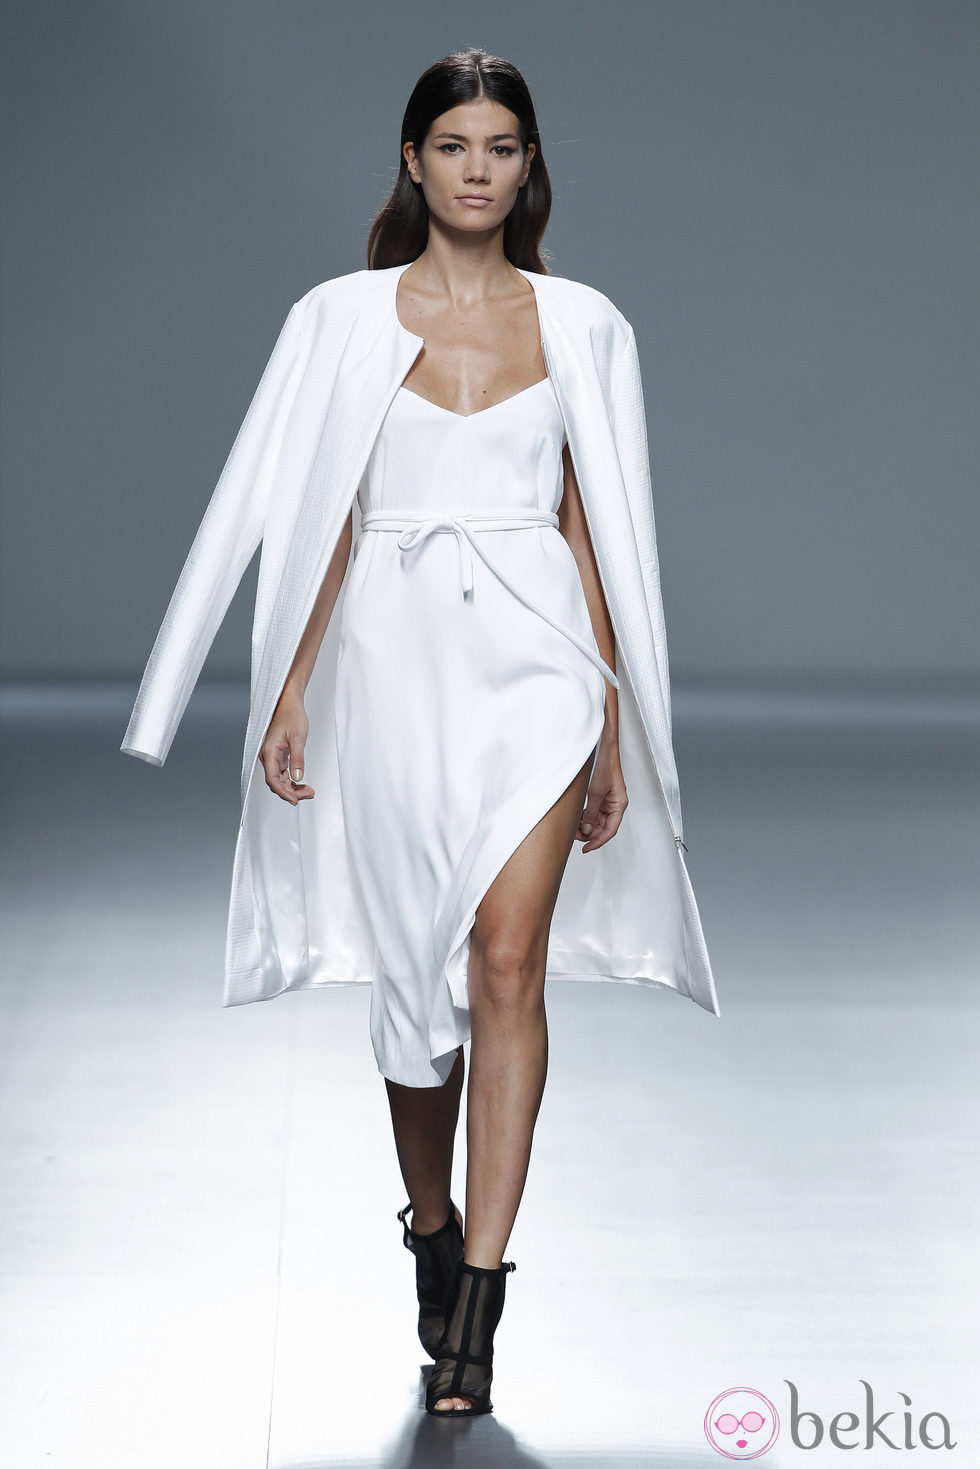 Vestido y abrigo de la colección primavera/verano 2014 de Ángel Schlesser en Madrid Fashion Week